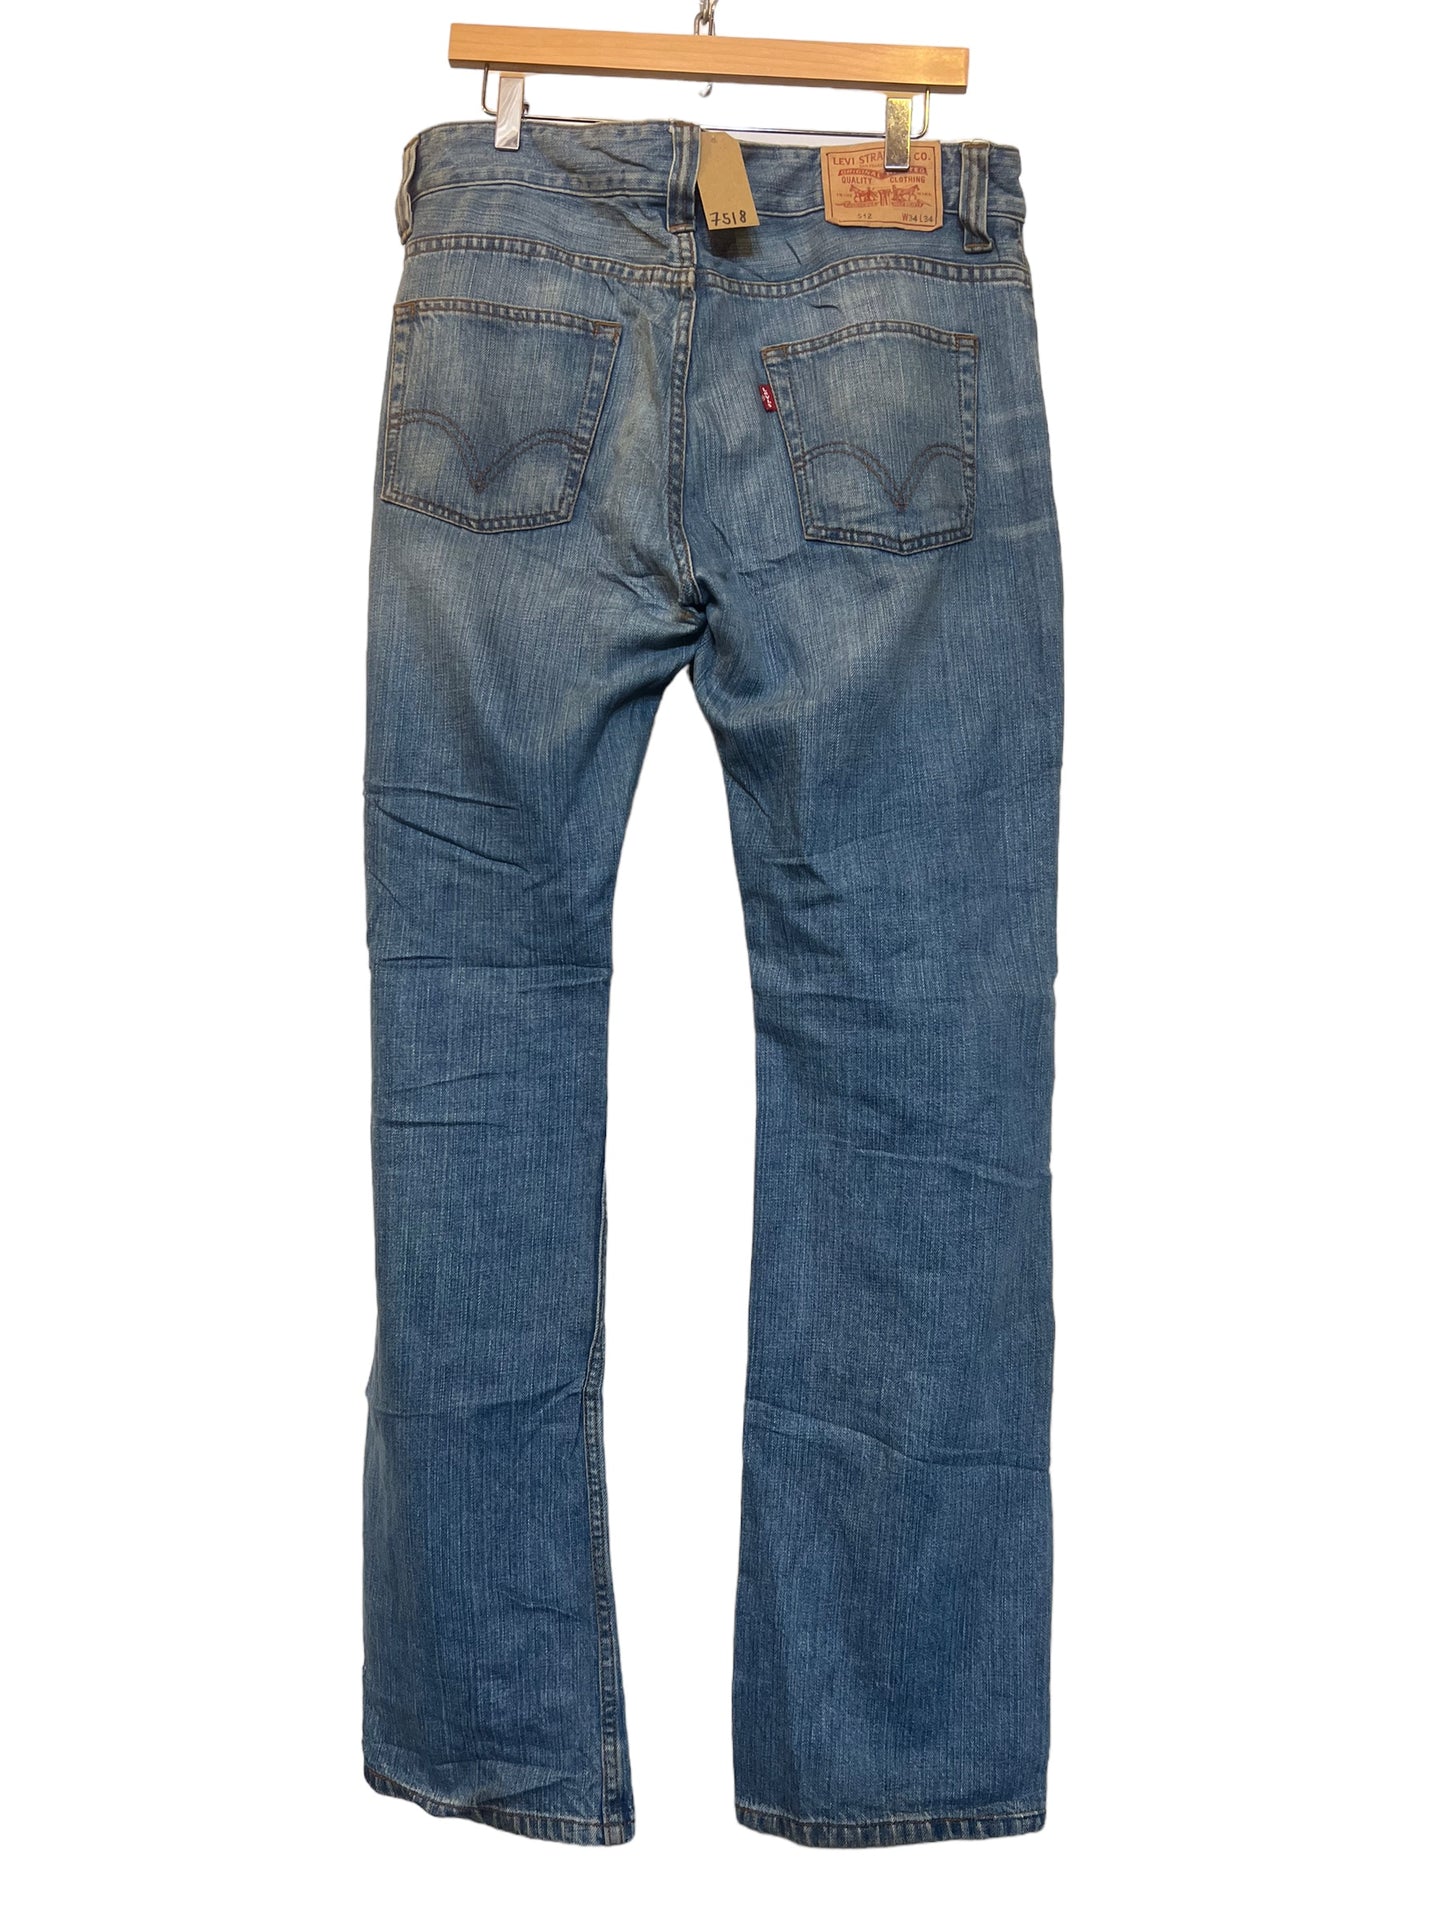 Levi 512 jeans (34x34)